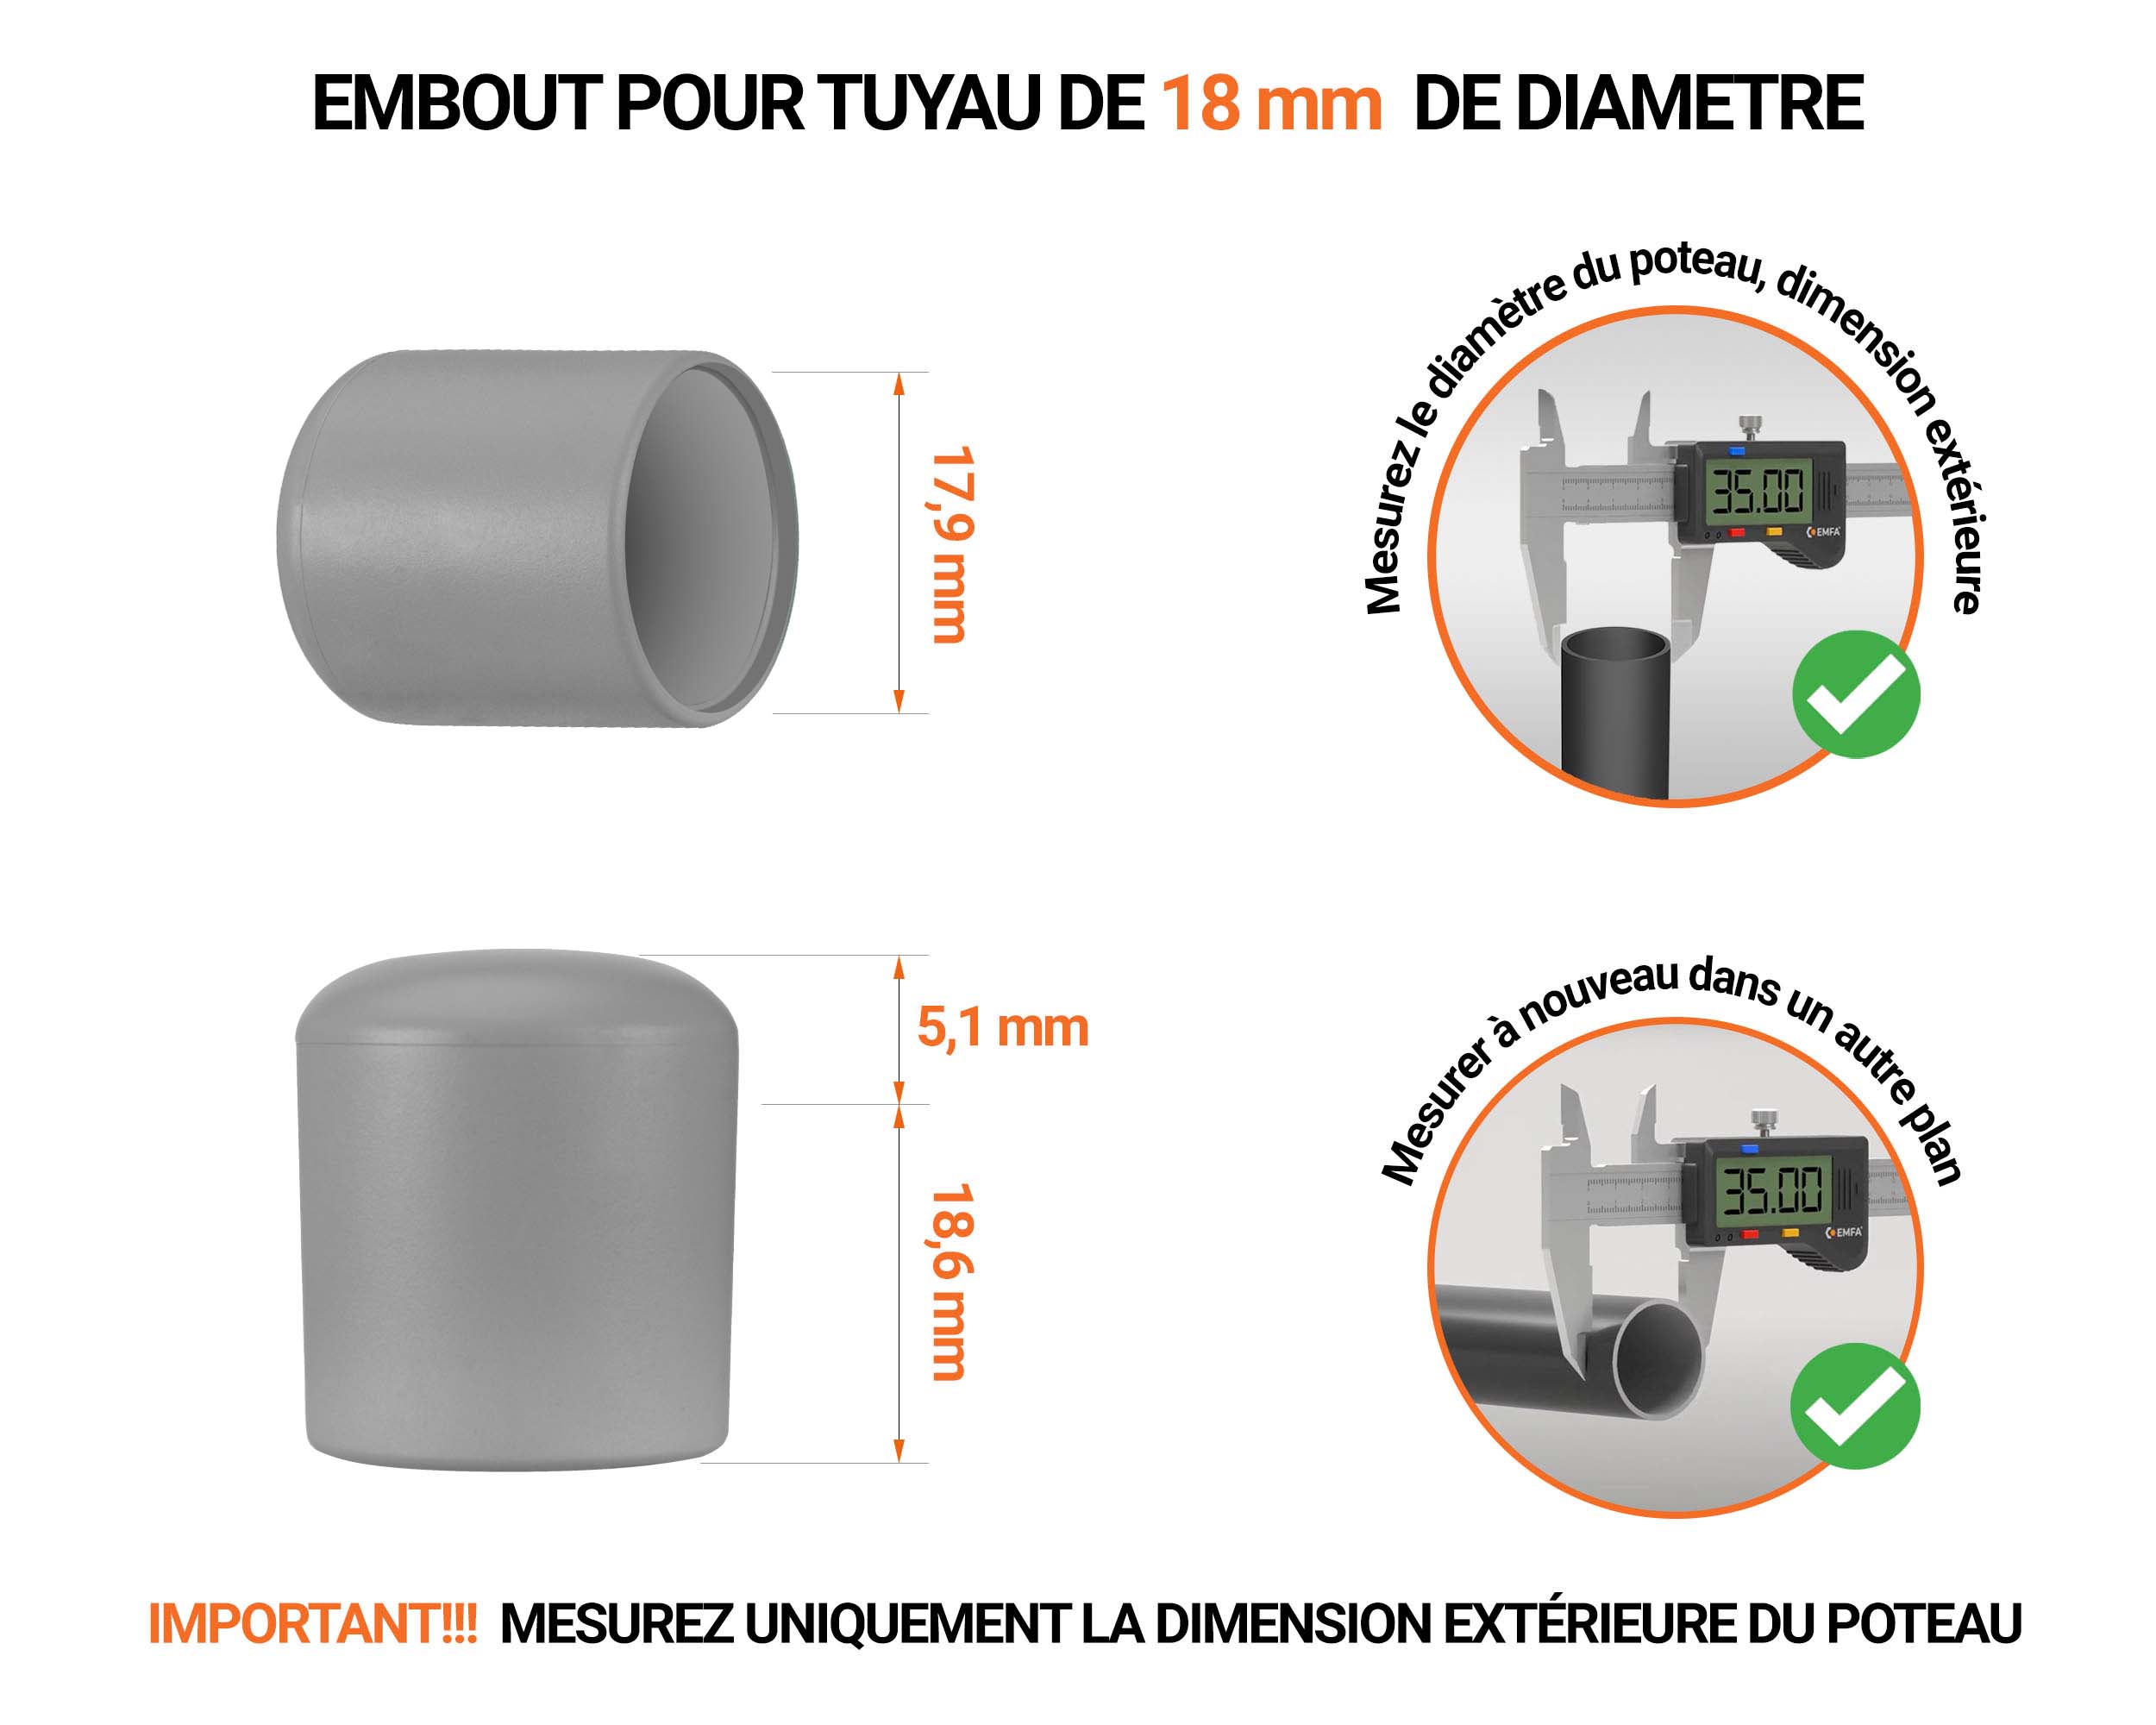 Embout noir de diamètre extérieur 18 mm pour tube rond avec dimensions et guide de mesure correcte du bouchon plastique.